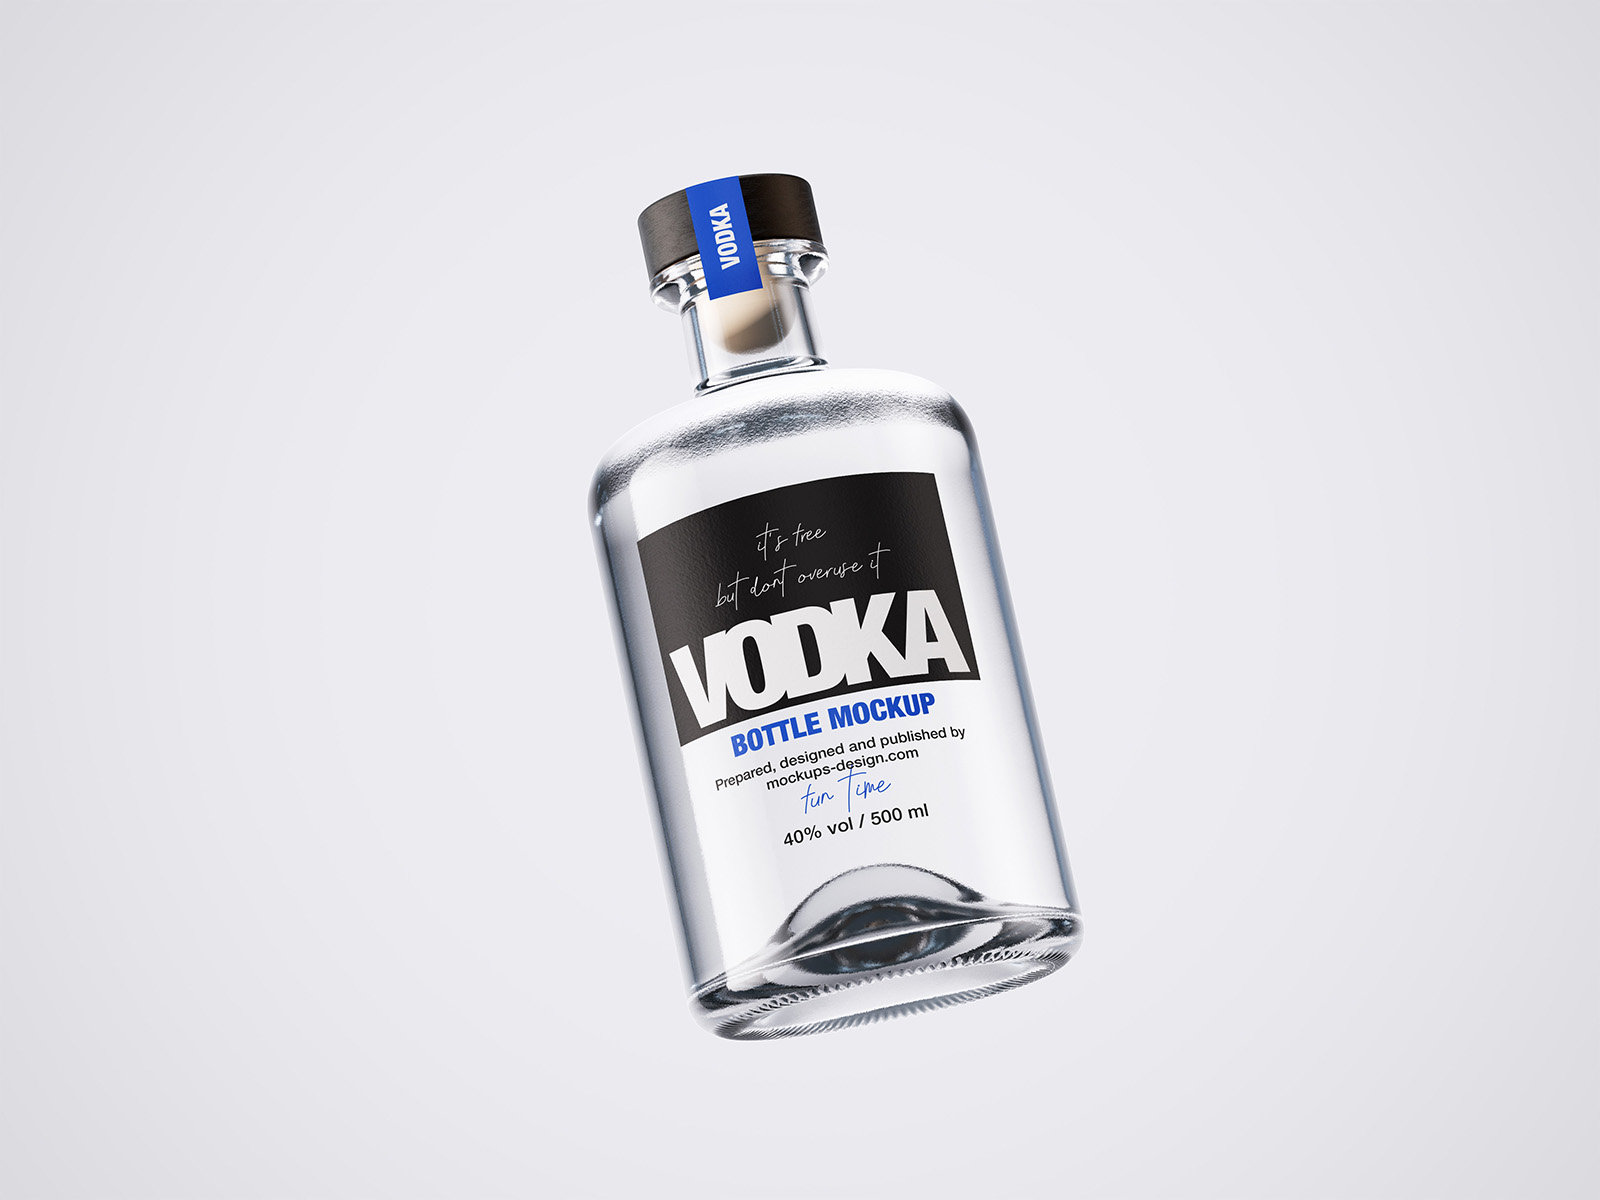 2 Vodka Bottle Mockups in Varied Visions FREE PSD